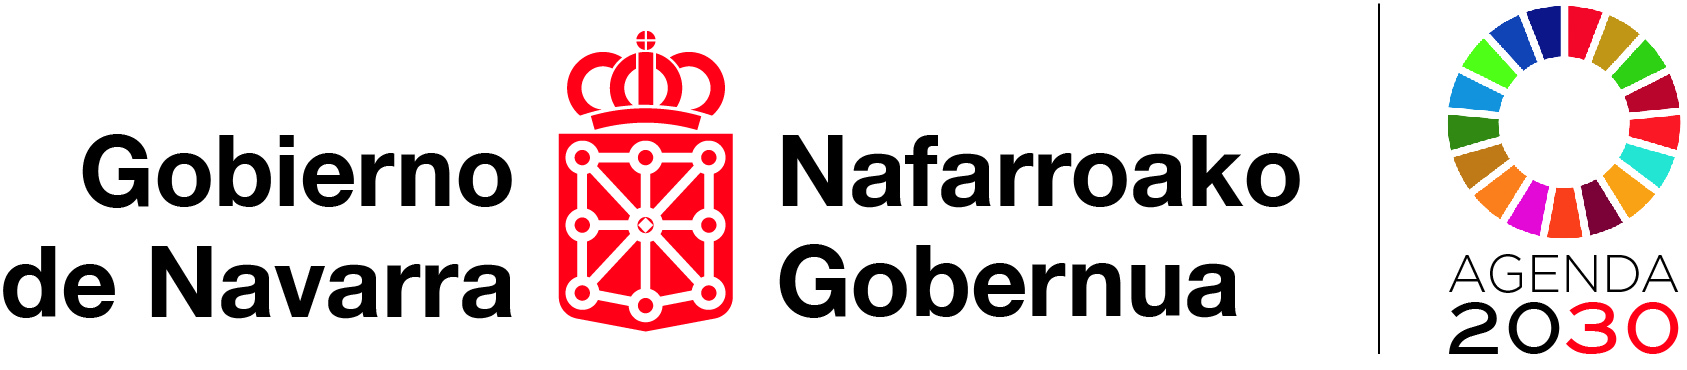 Logo del Gobierno de Navarra en castellano y en euskera, con el logo de la Agenda 2030 a su derecha.